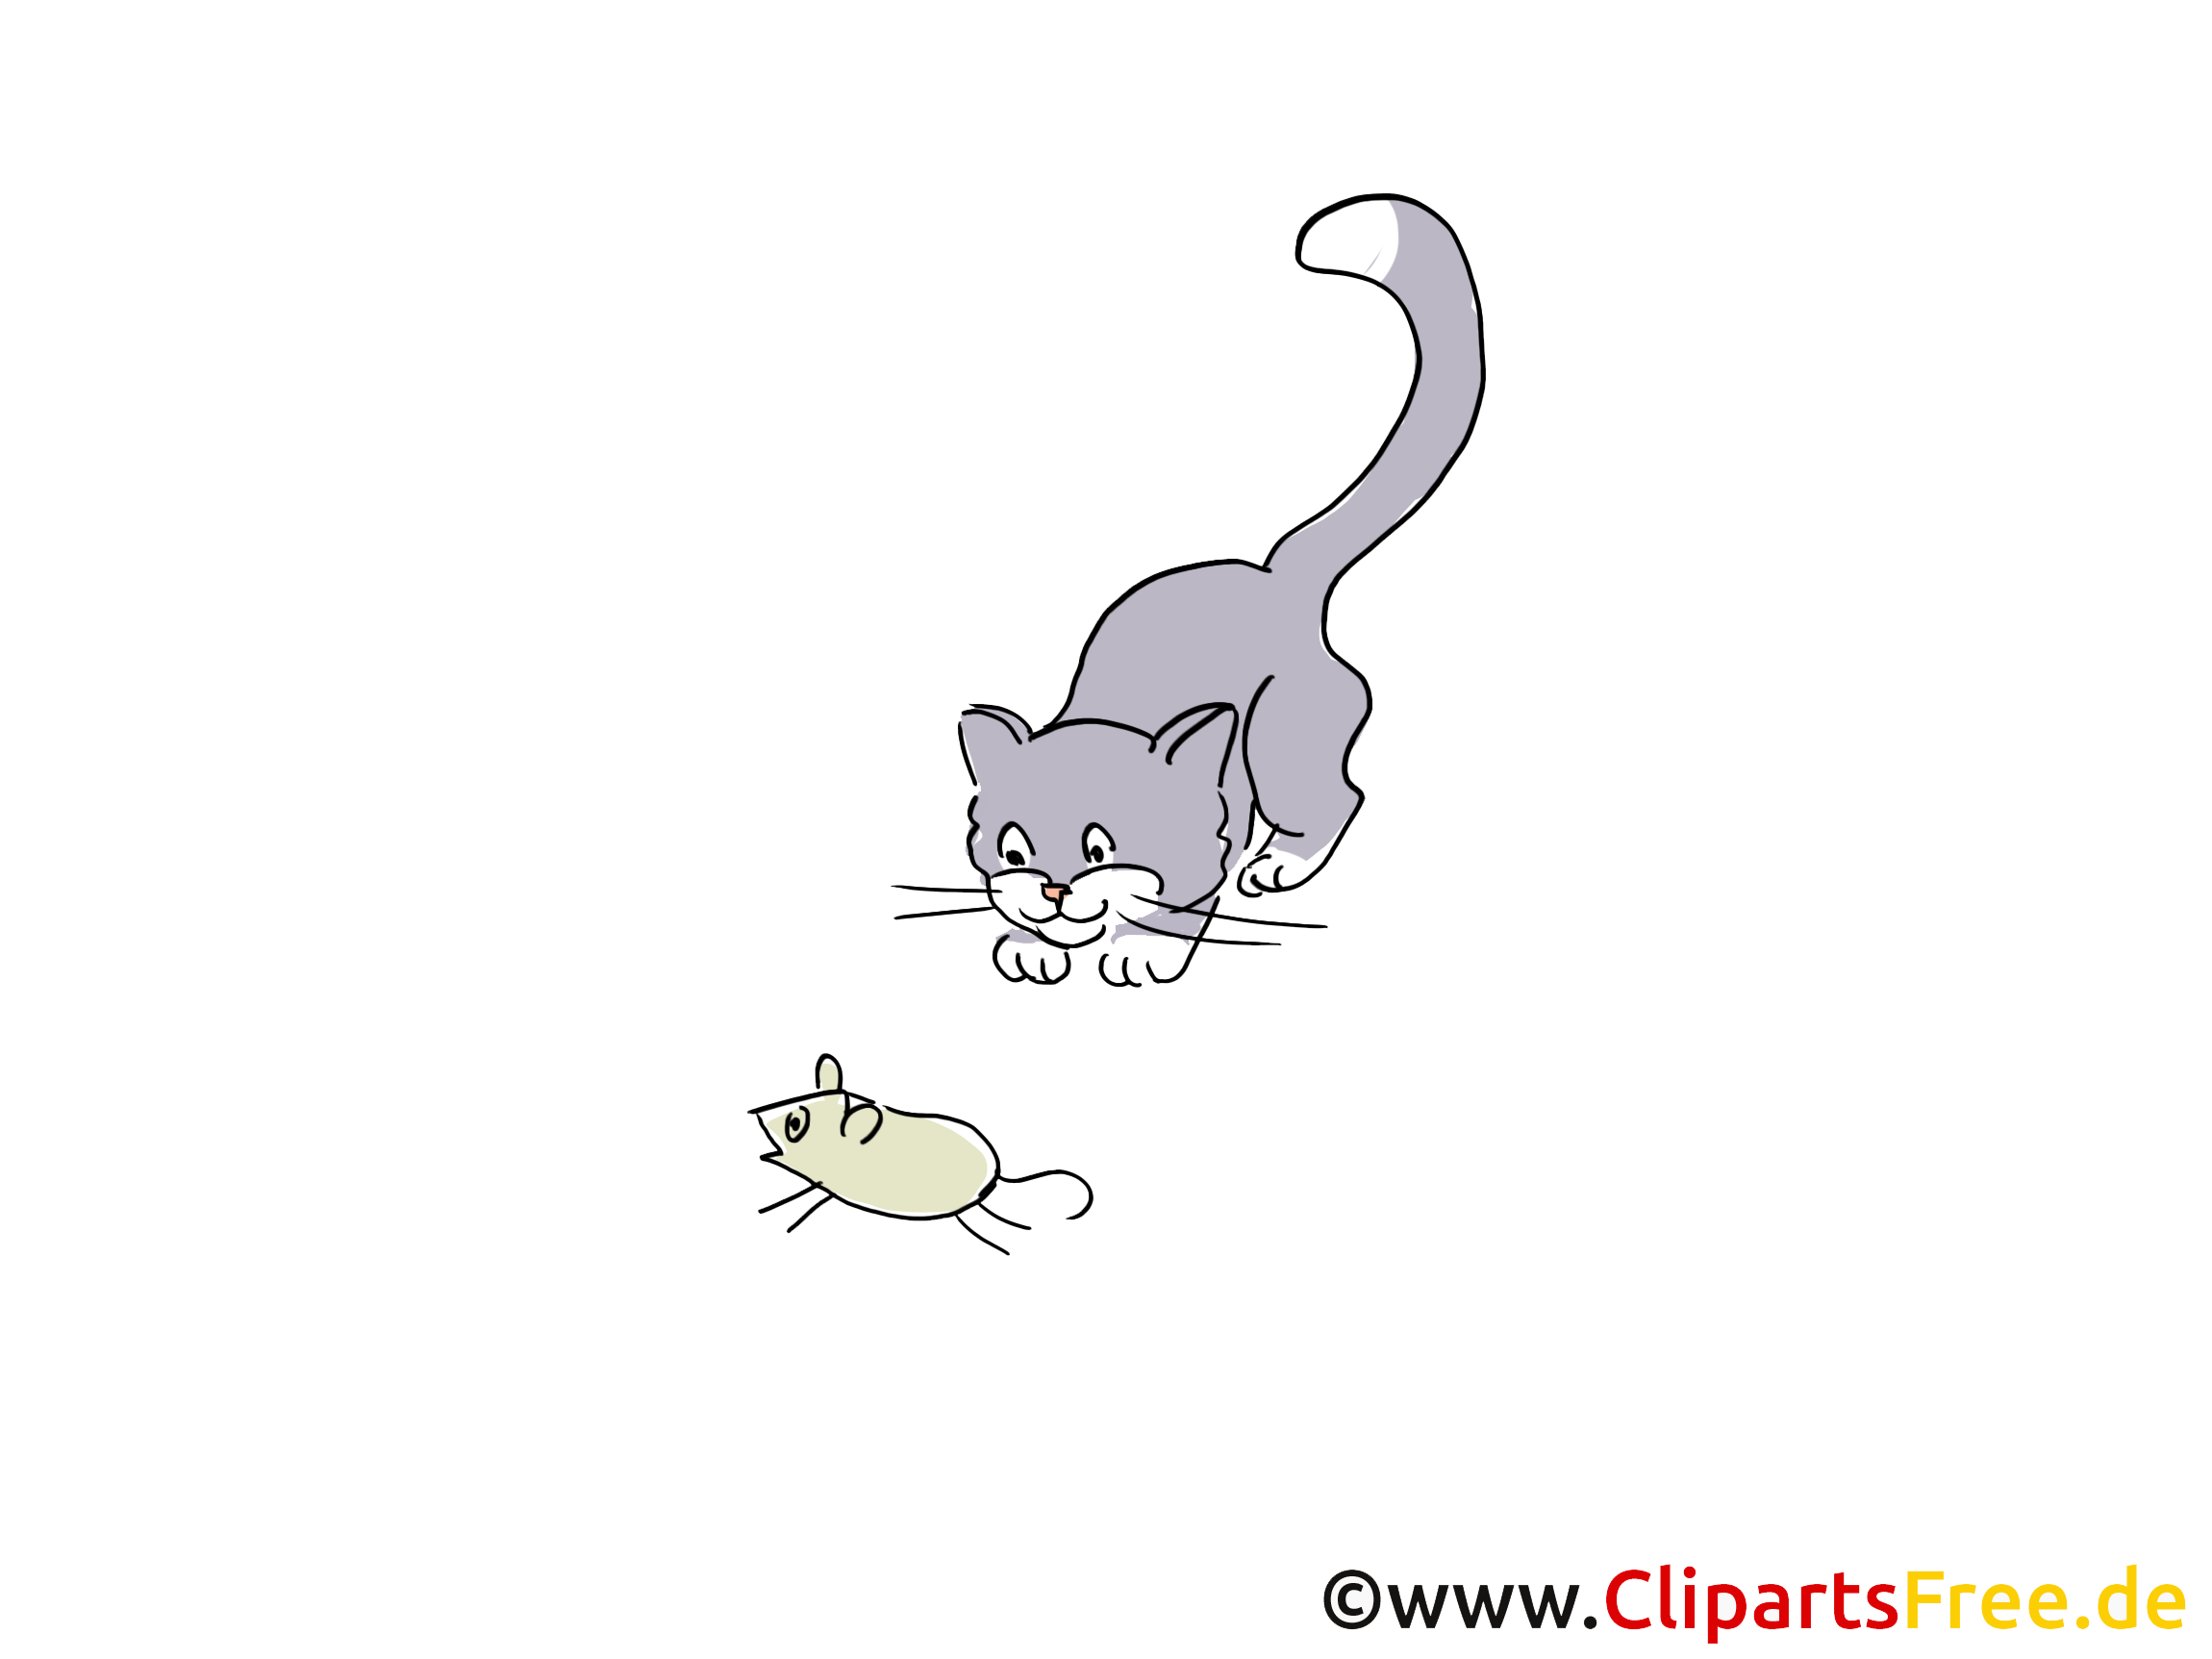 Katze und Maus Bild, Cartoon, Clipart Maus bilder